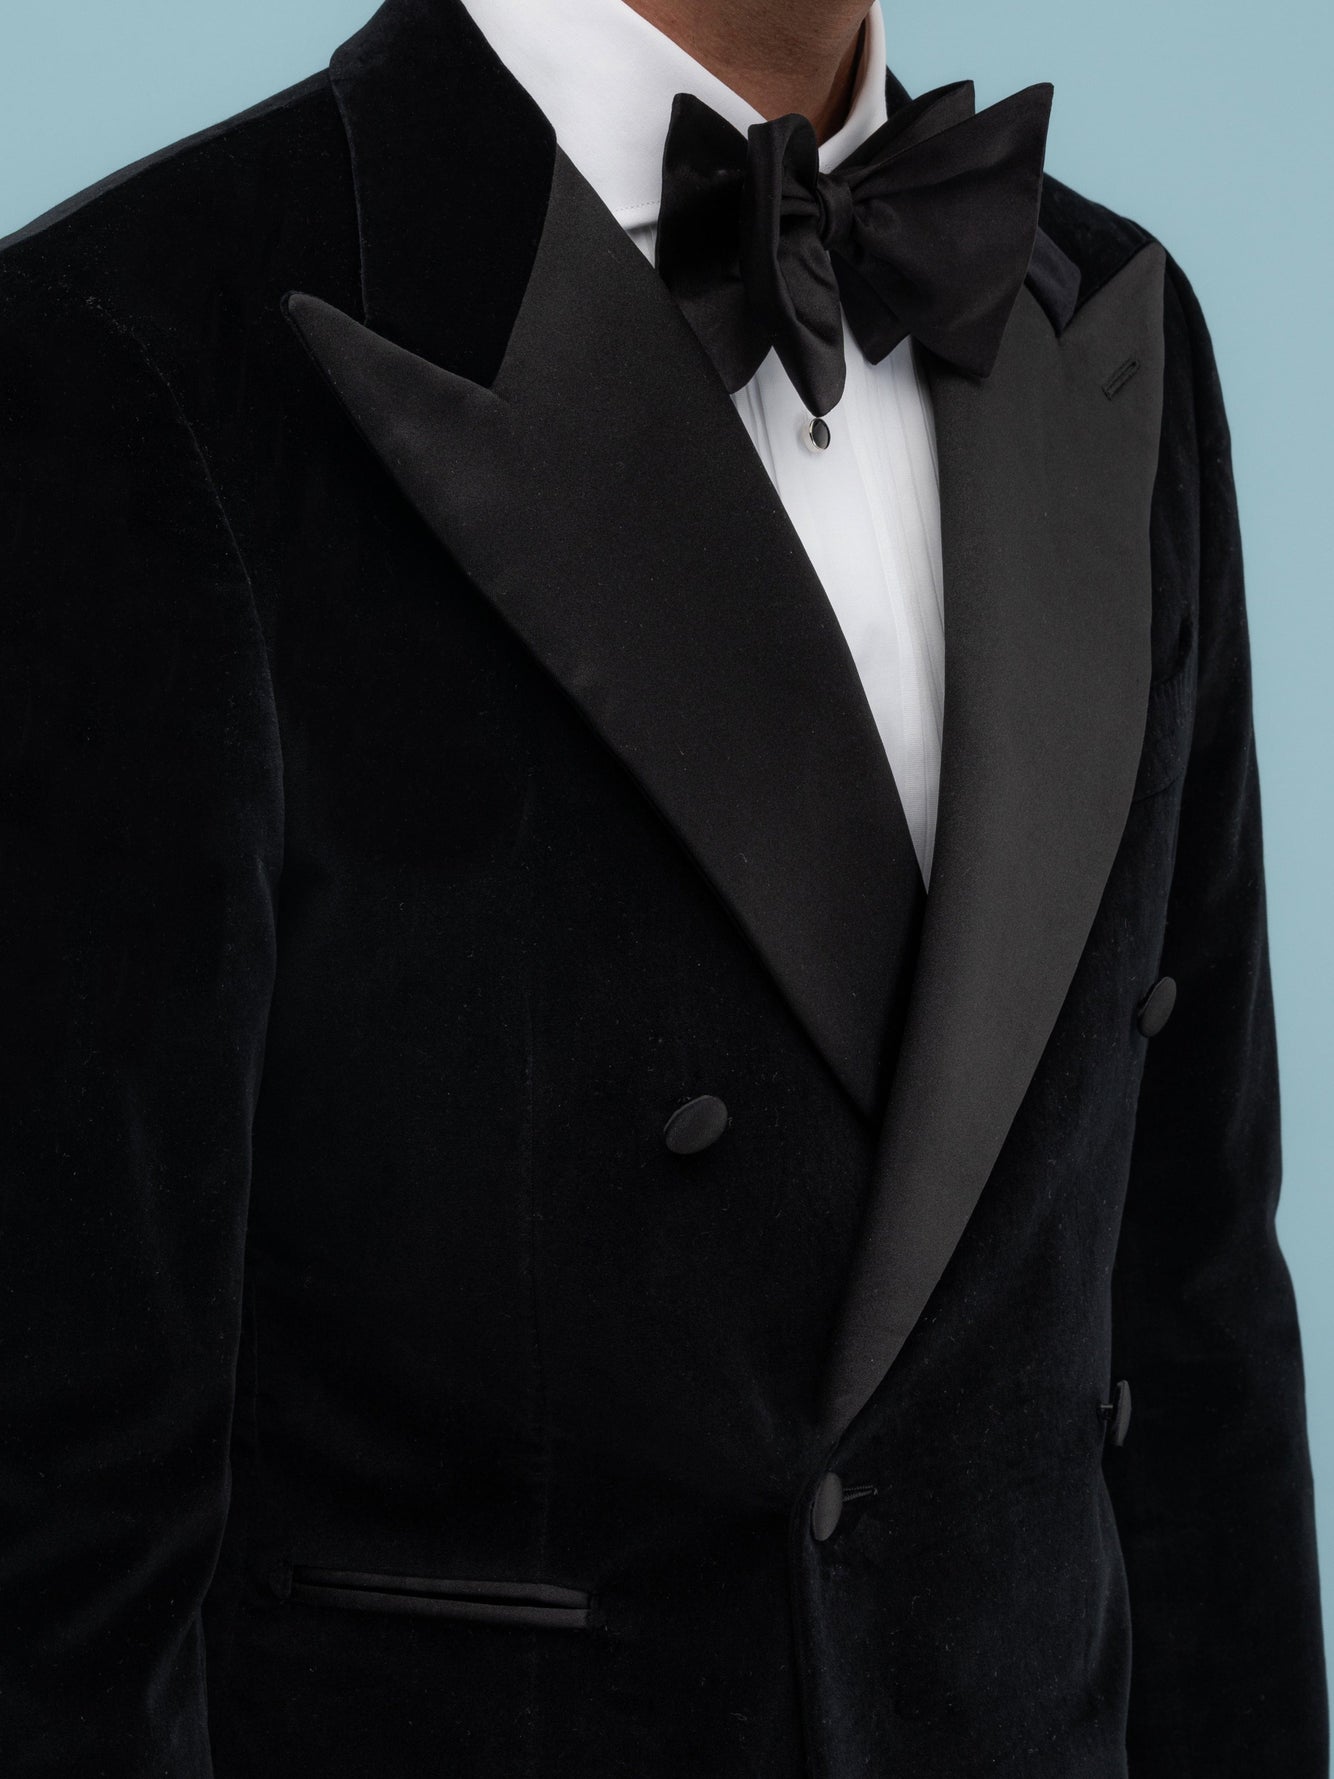 Black Velvet Tuxedo Suit - Grand Le Mar